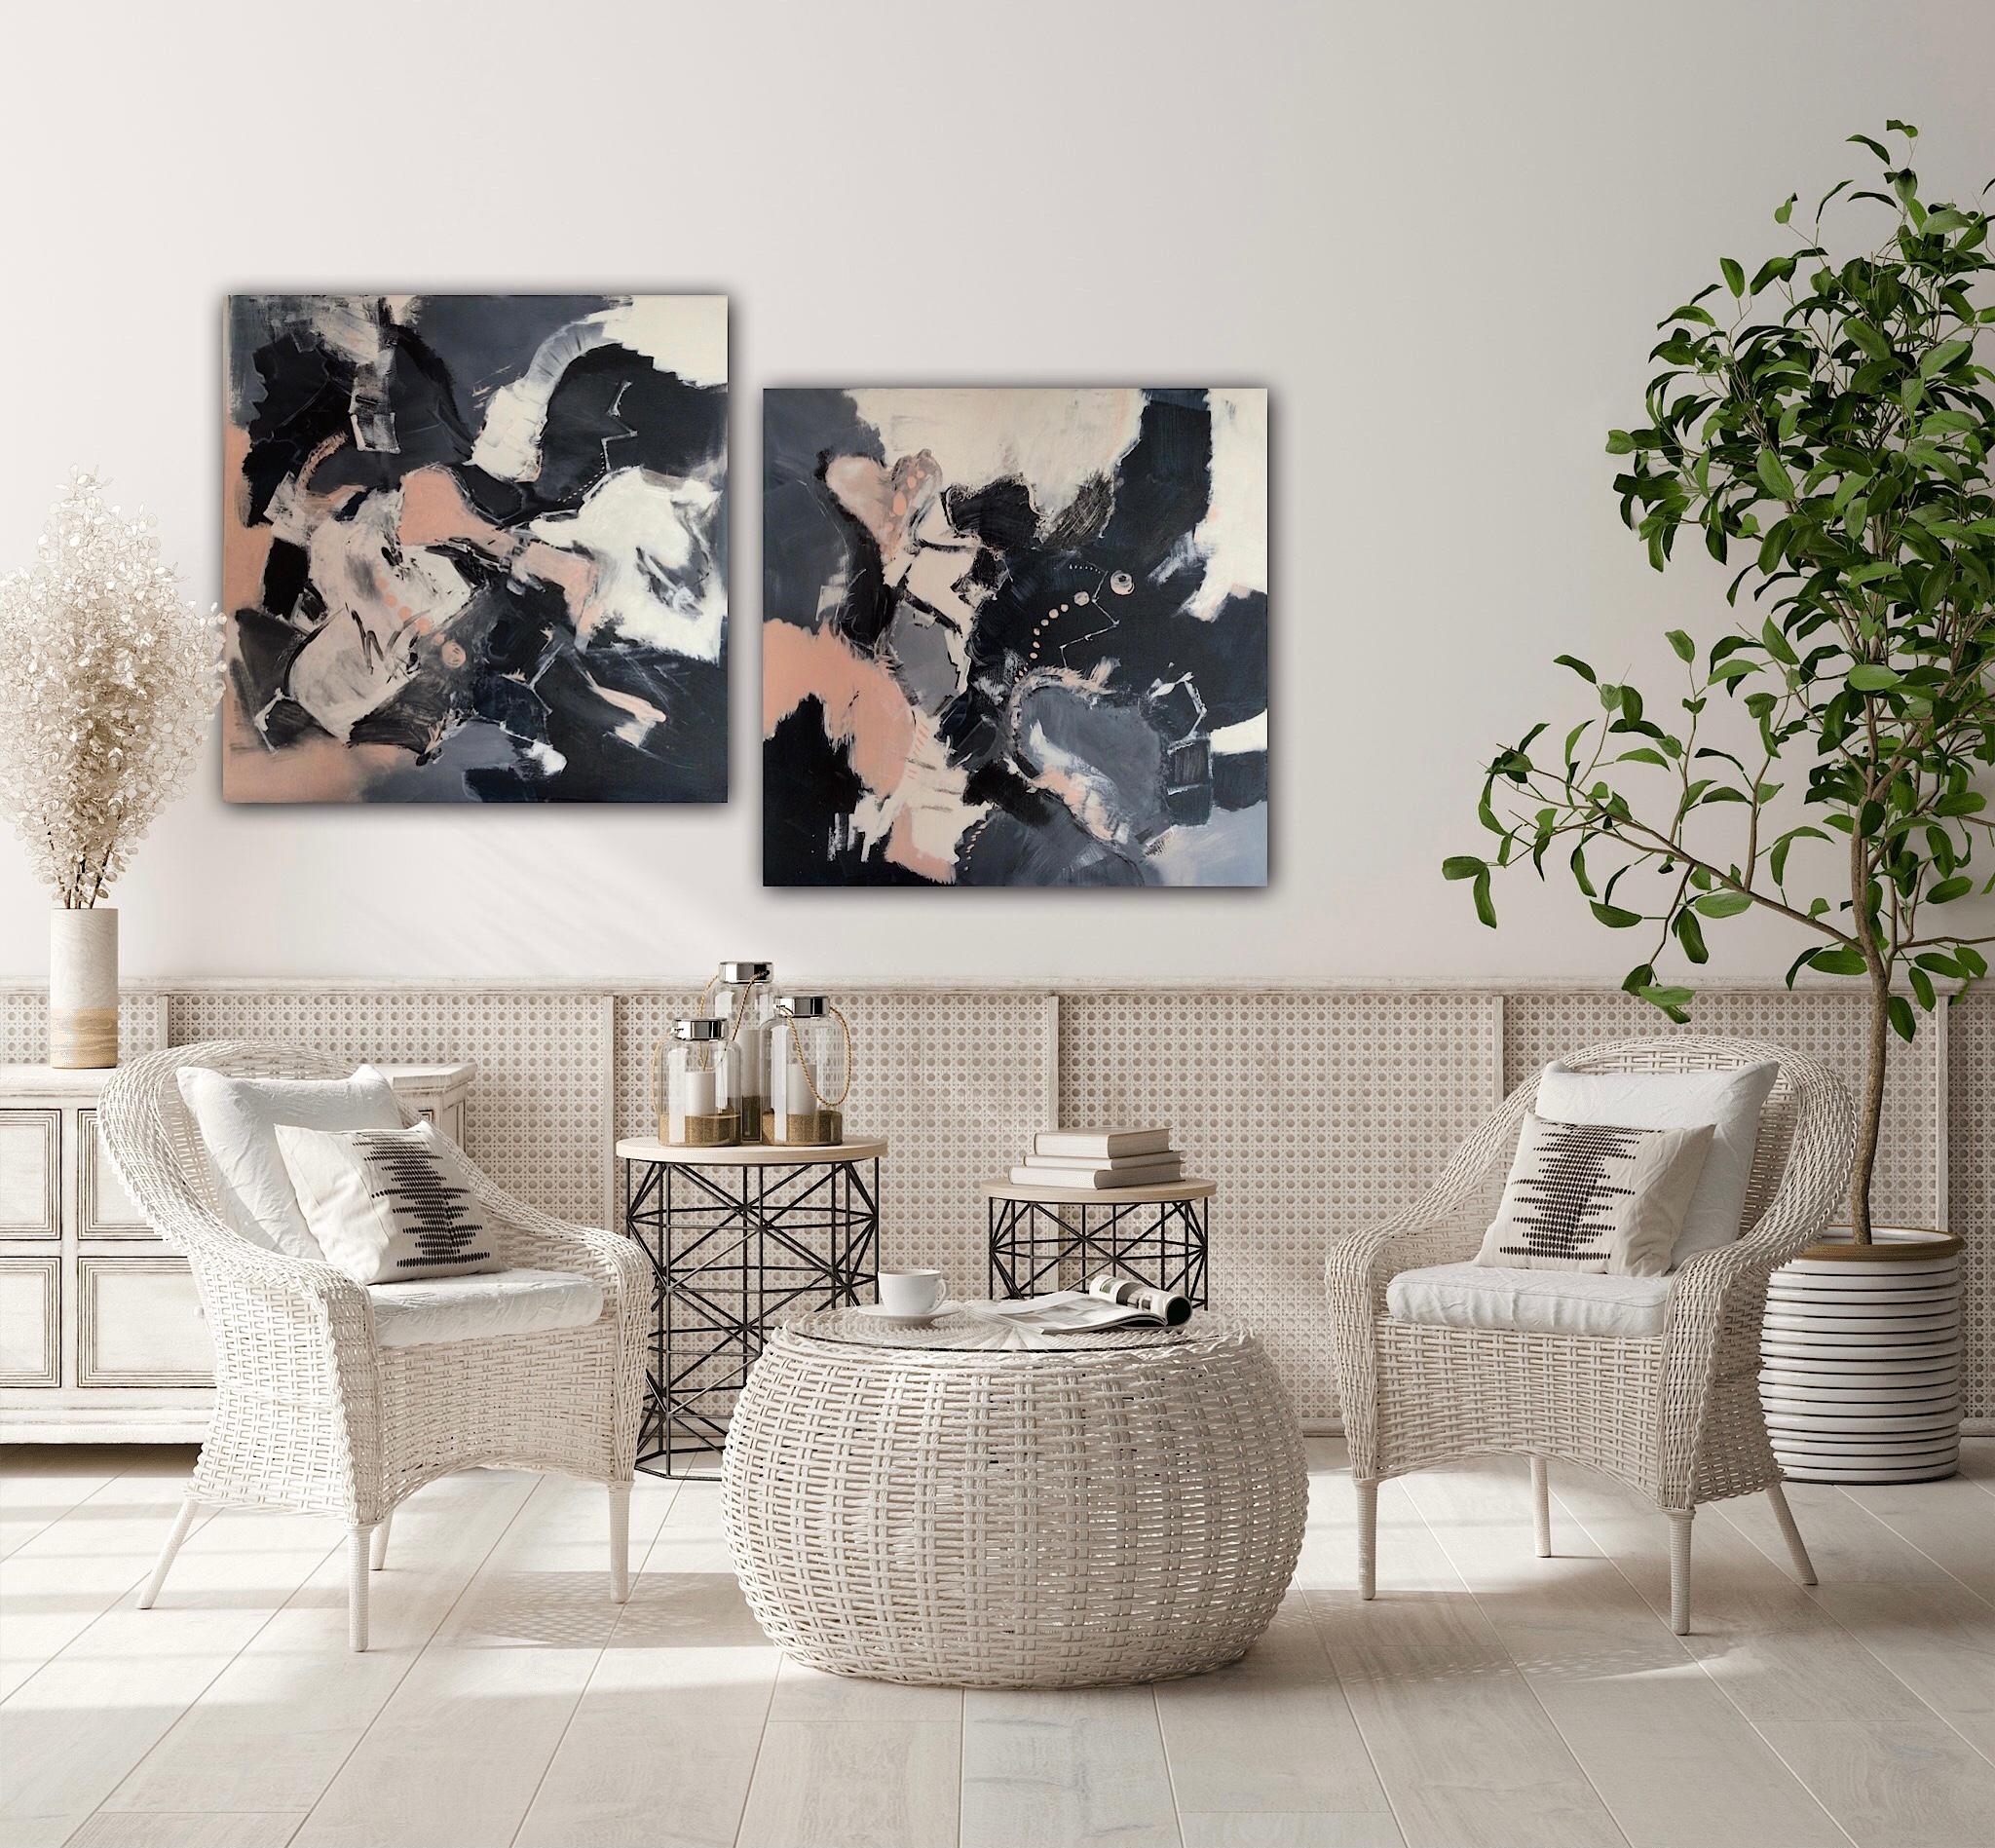 Einzigartiges Gemälde Unikat Set 💕 in Acryl auf Leinwand. #neuhier #livingchallenge #wanddeko #interieur #deko #couch